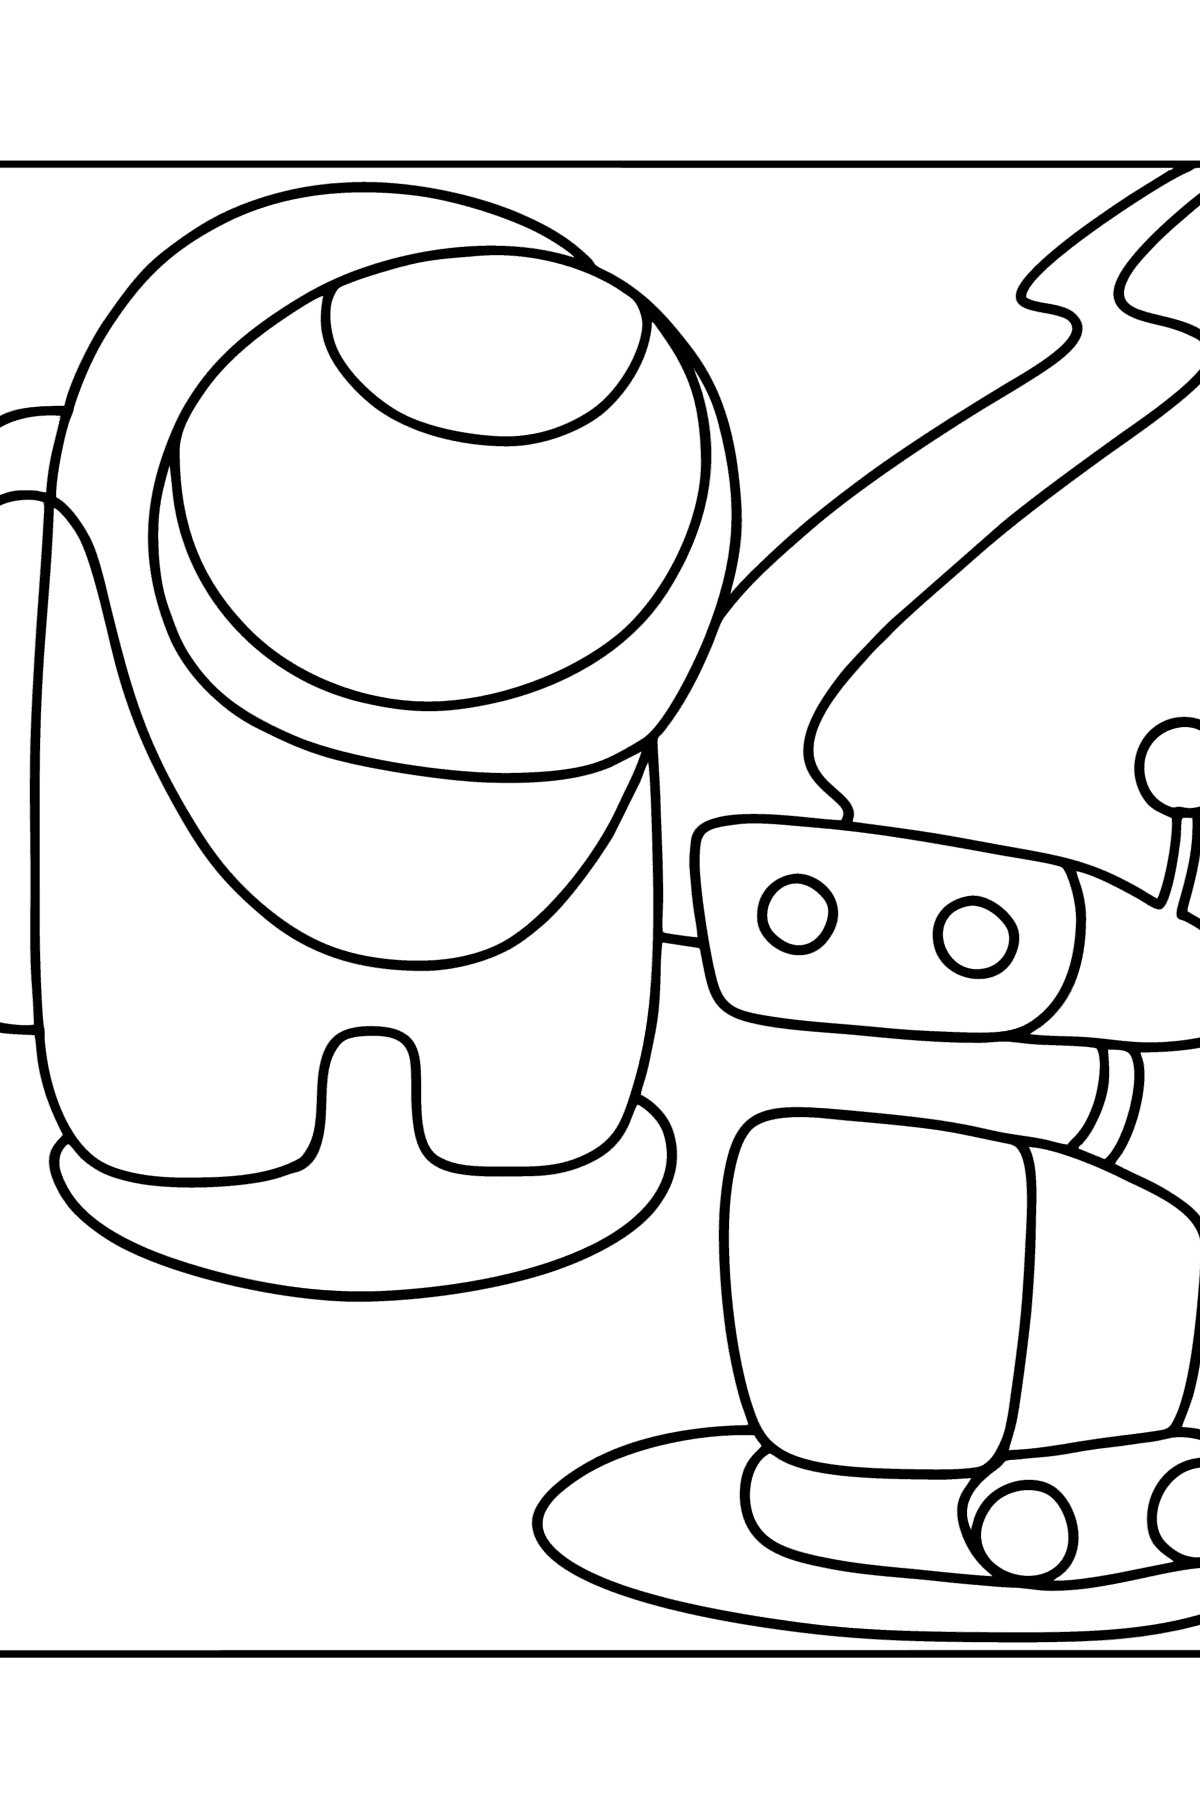 Раскраска мини член экипажа и робот - Картинки для Детей